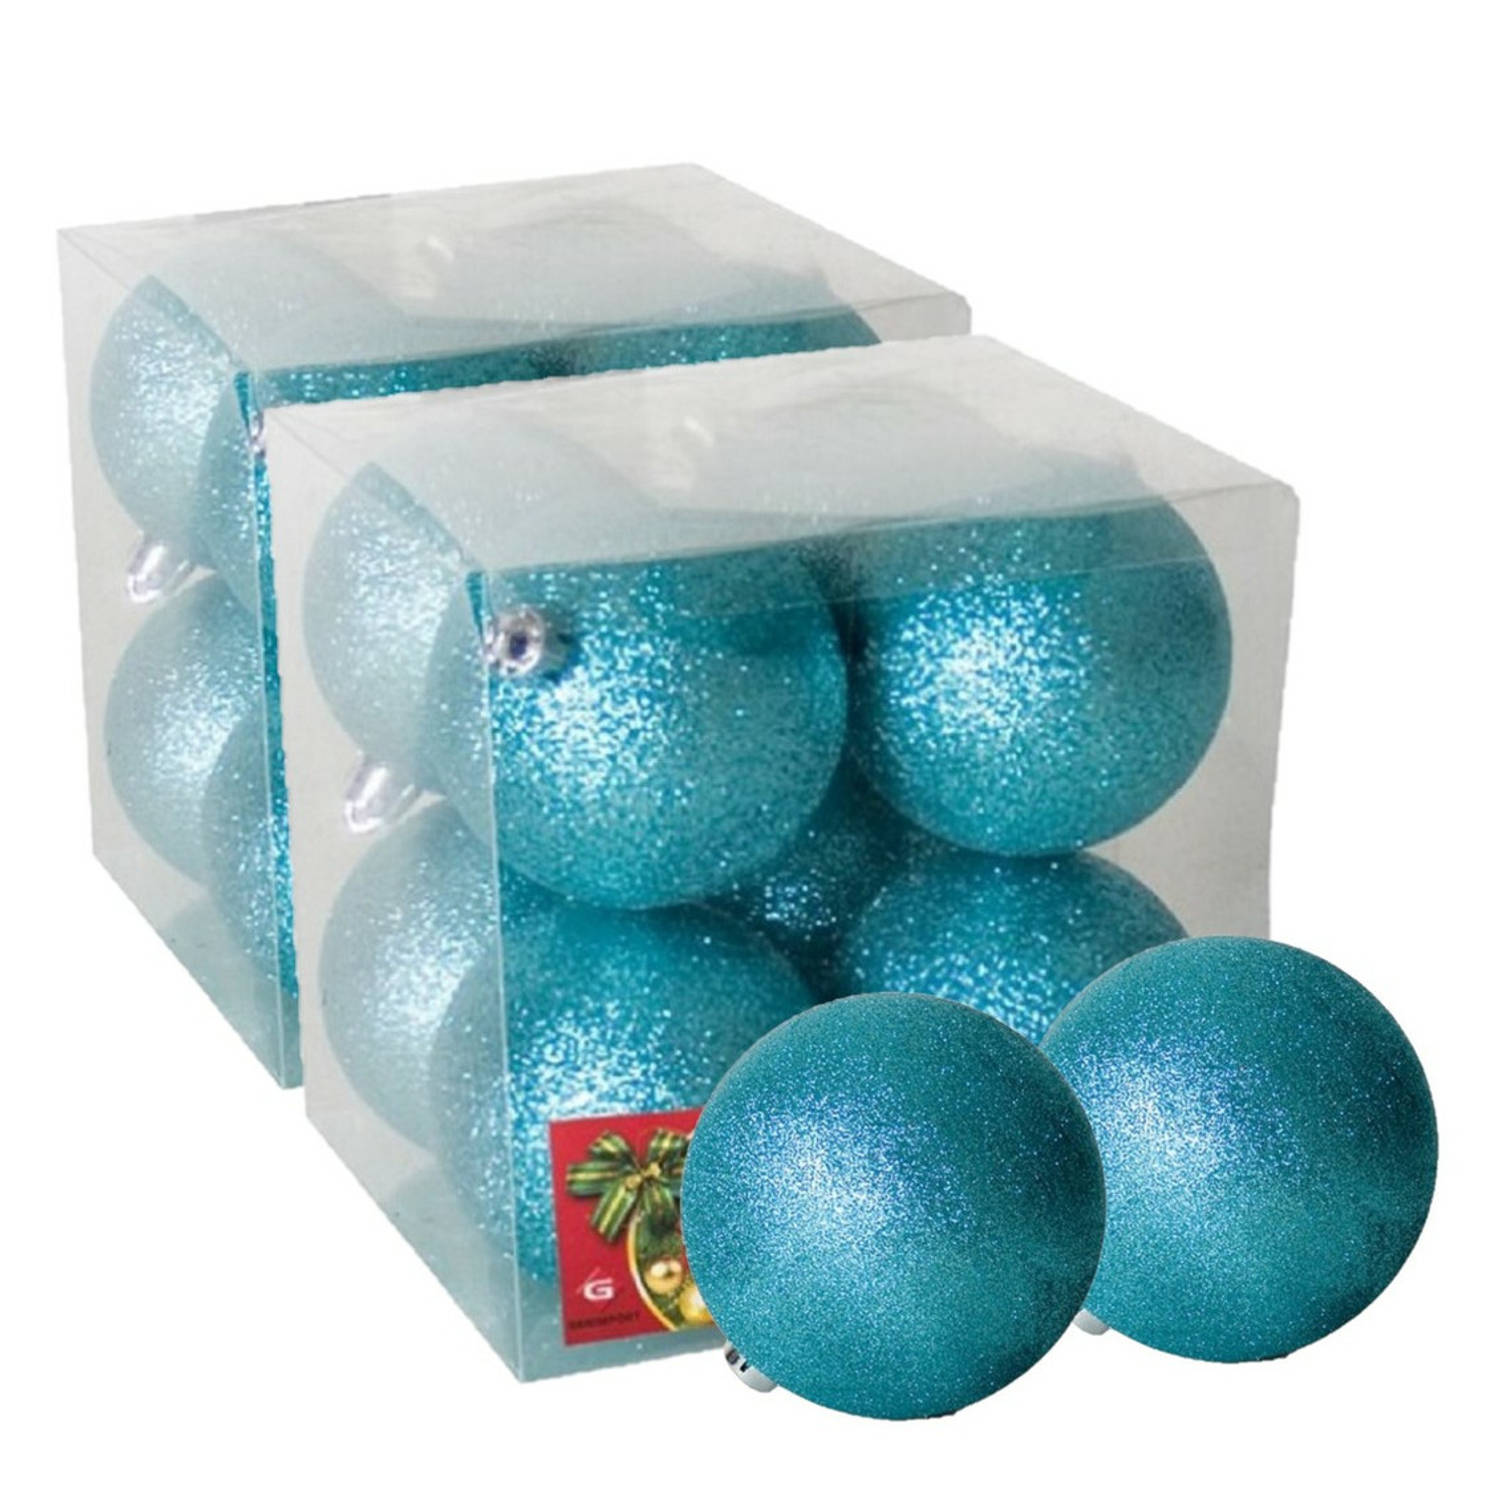 16x stuks kerstballen ijsblauw glitters kunststof 7 cm Kerstbal